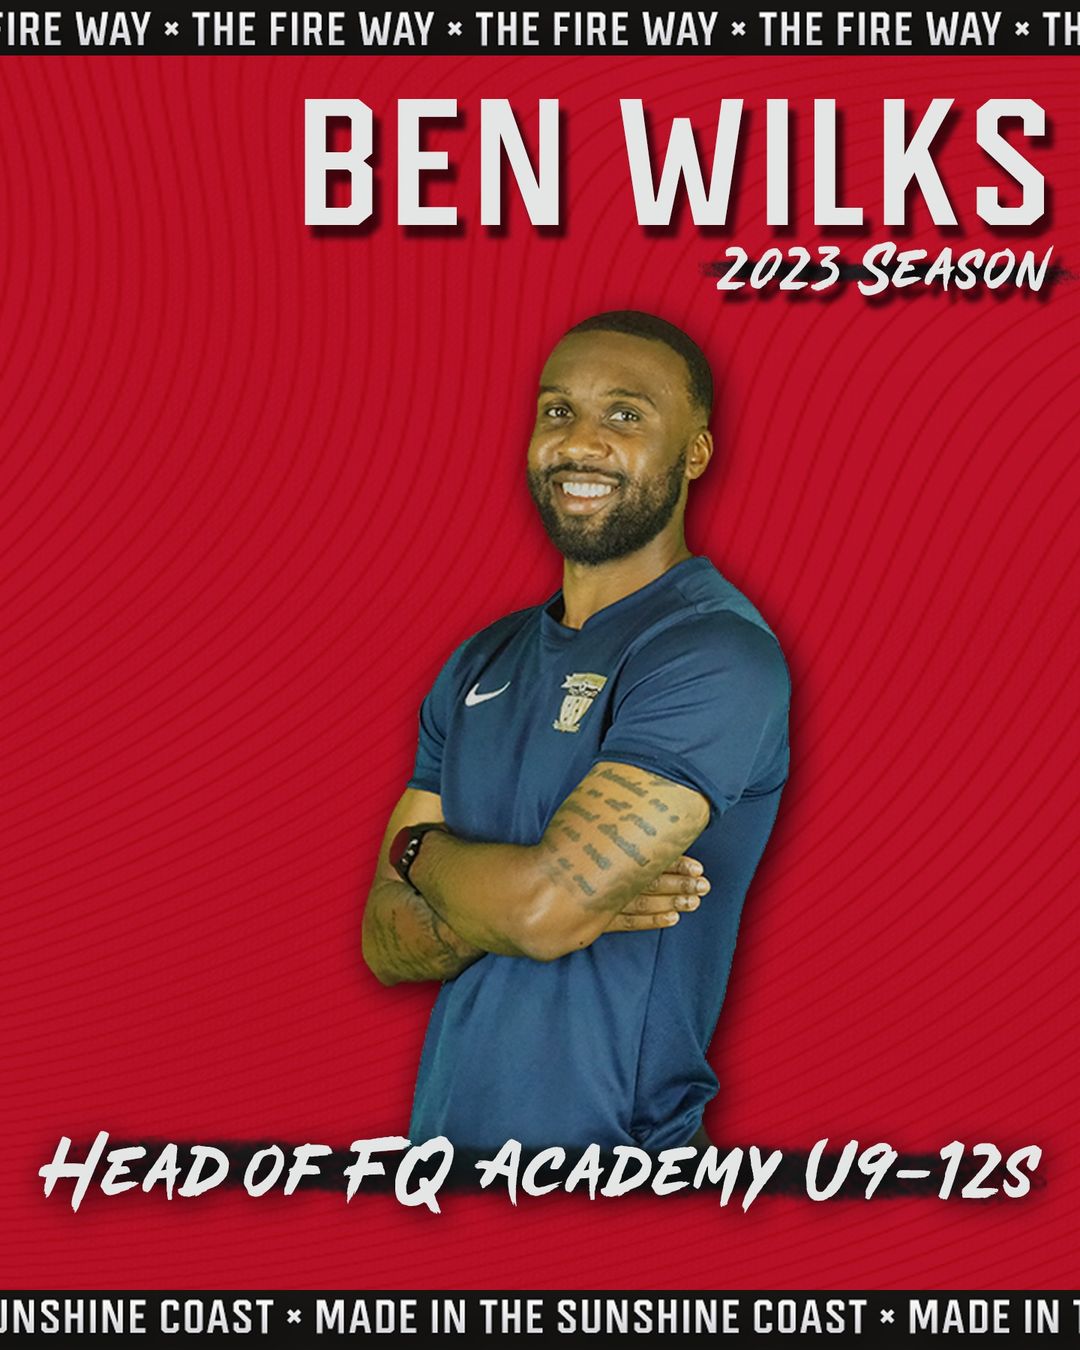 Ben Wilks Appointed Head of FQ Academy U9-12’s